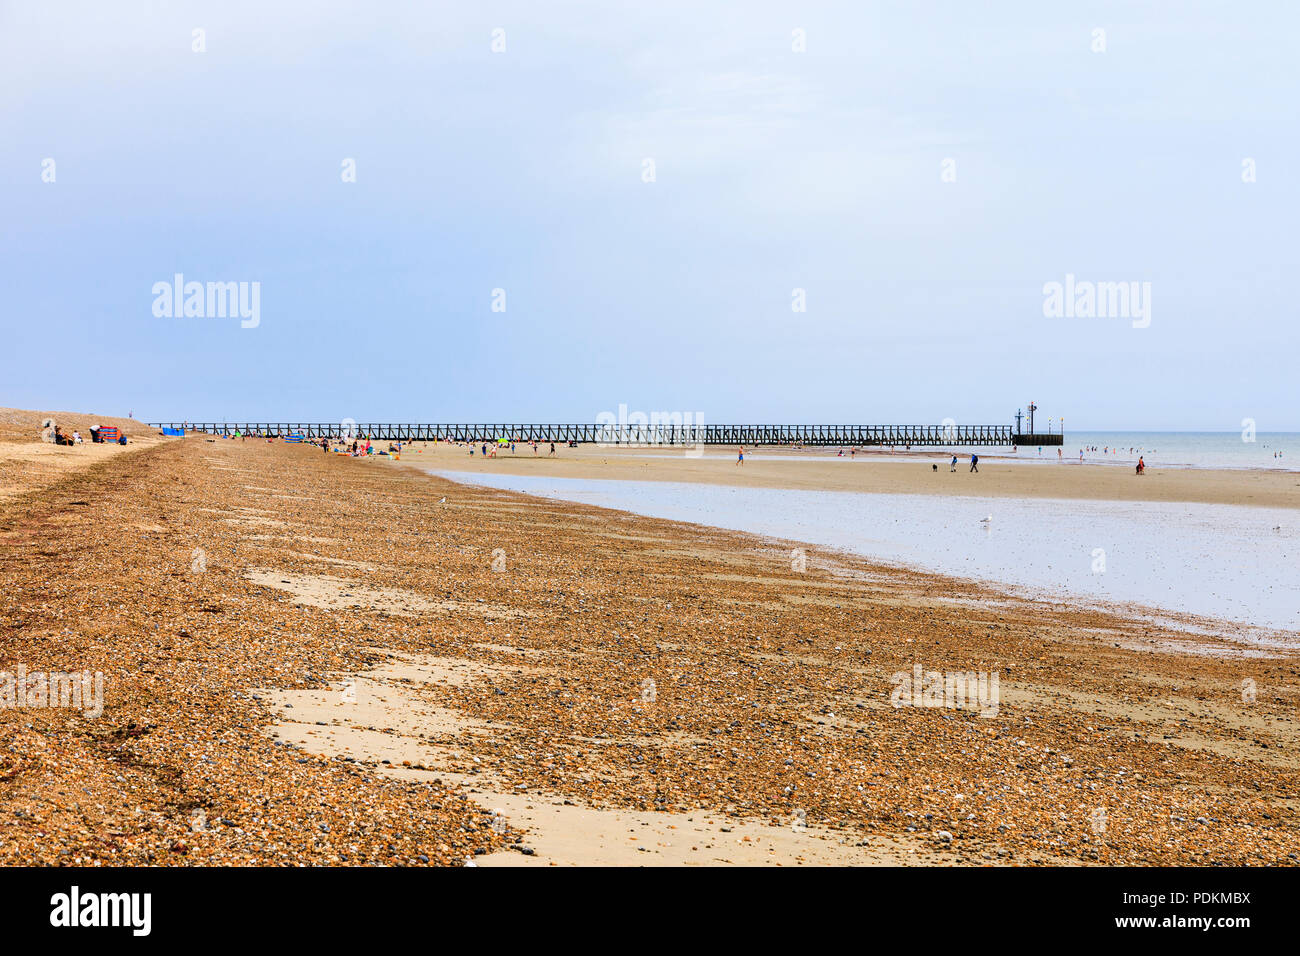 La crête de galets sur le sable à West Beachand épi, Littlehampton, une petite station balnéaire sur la côte sud dans la région de West Sussex, UK en été Banque D'Images